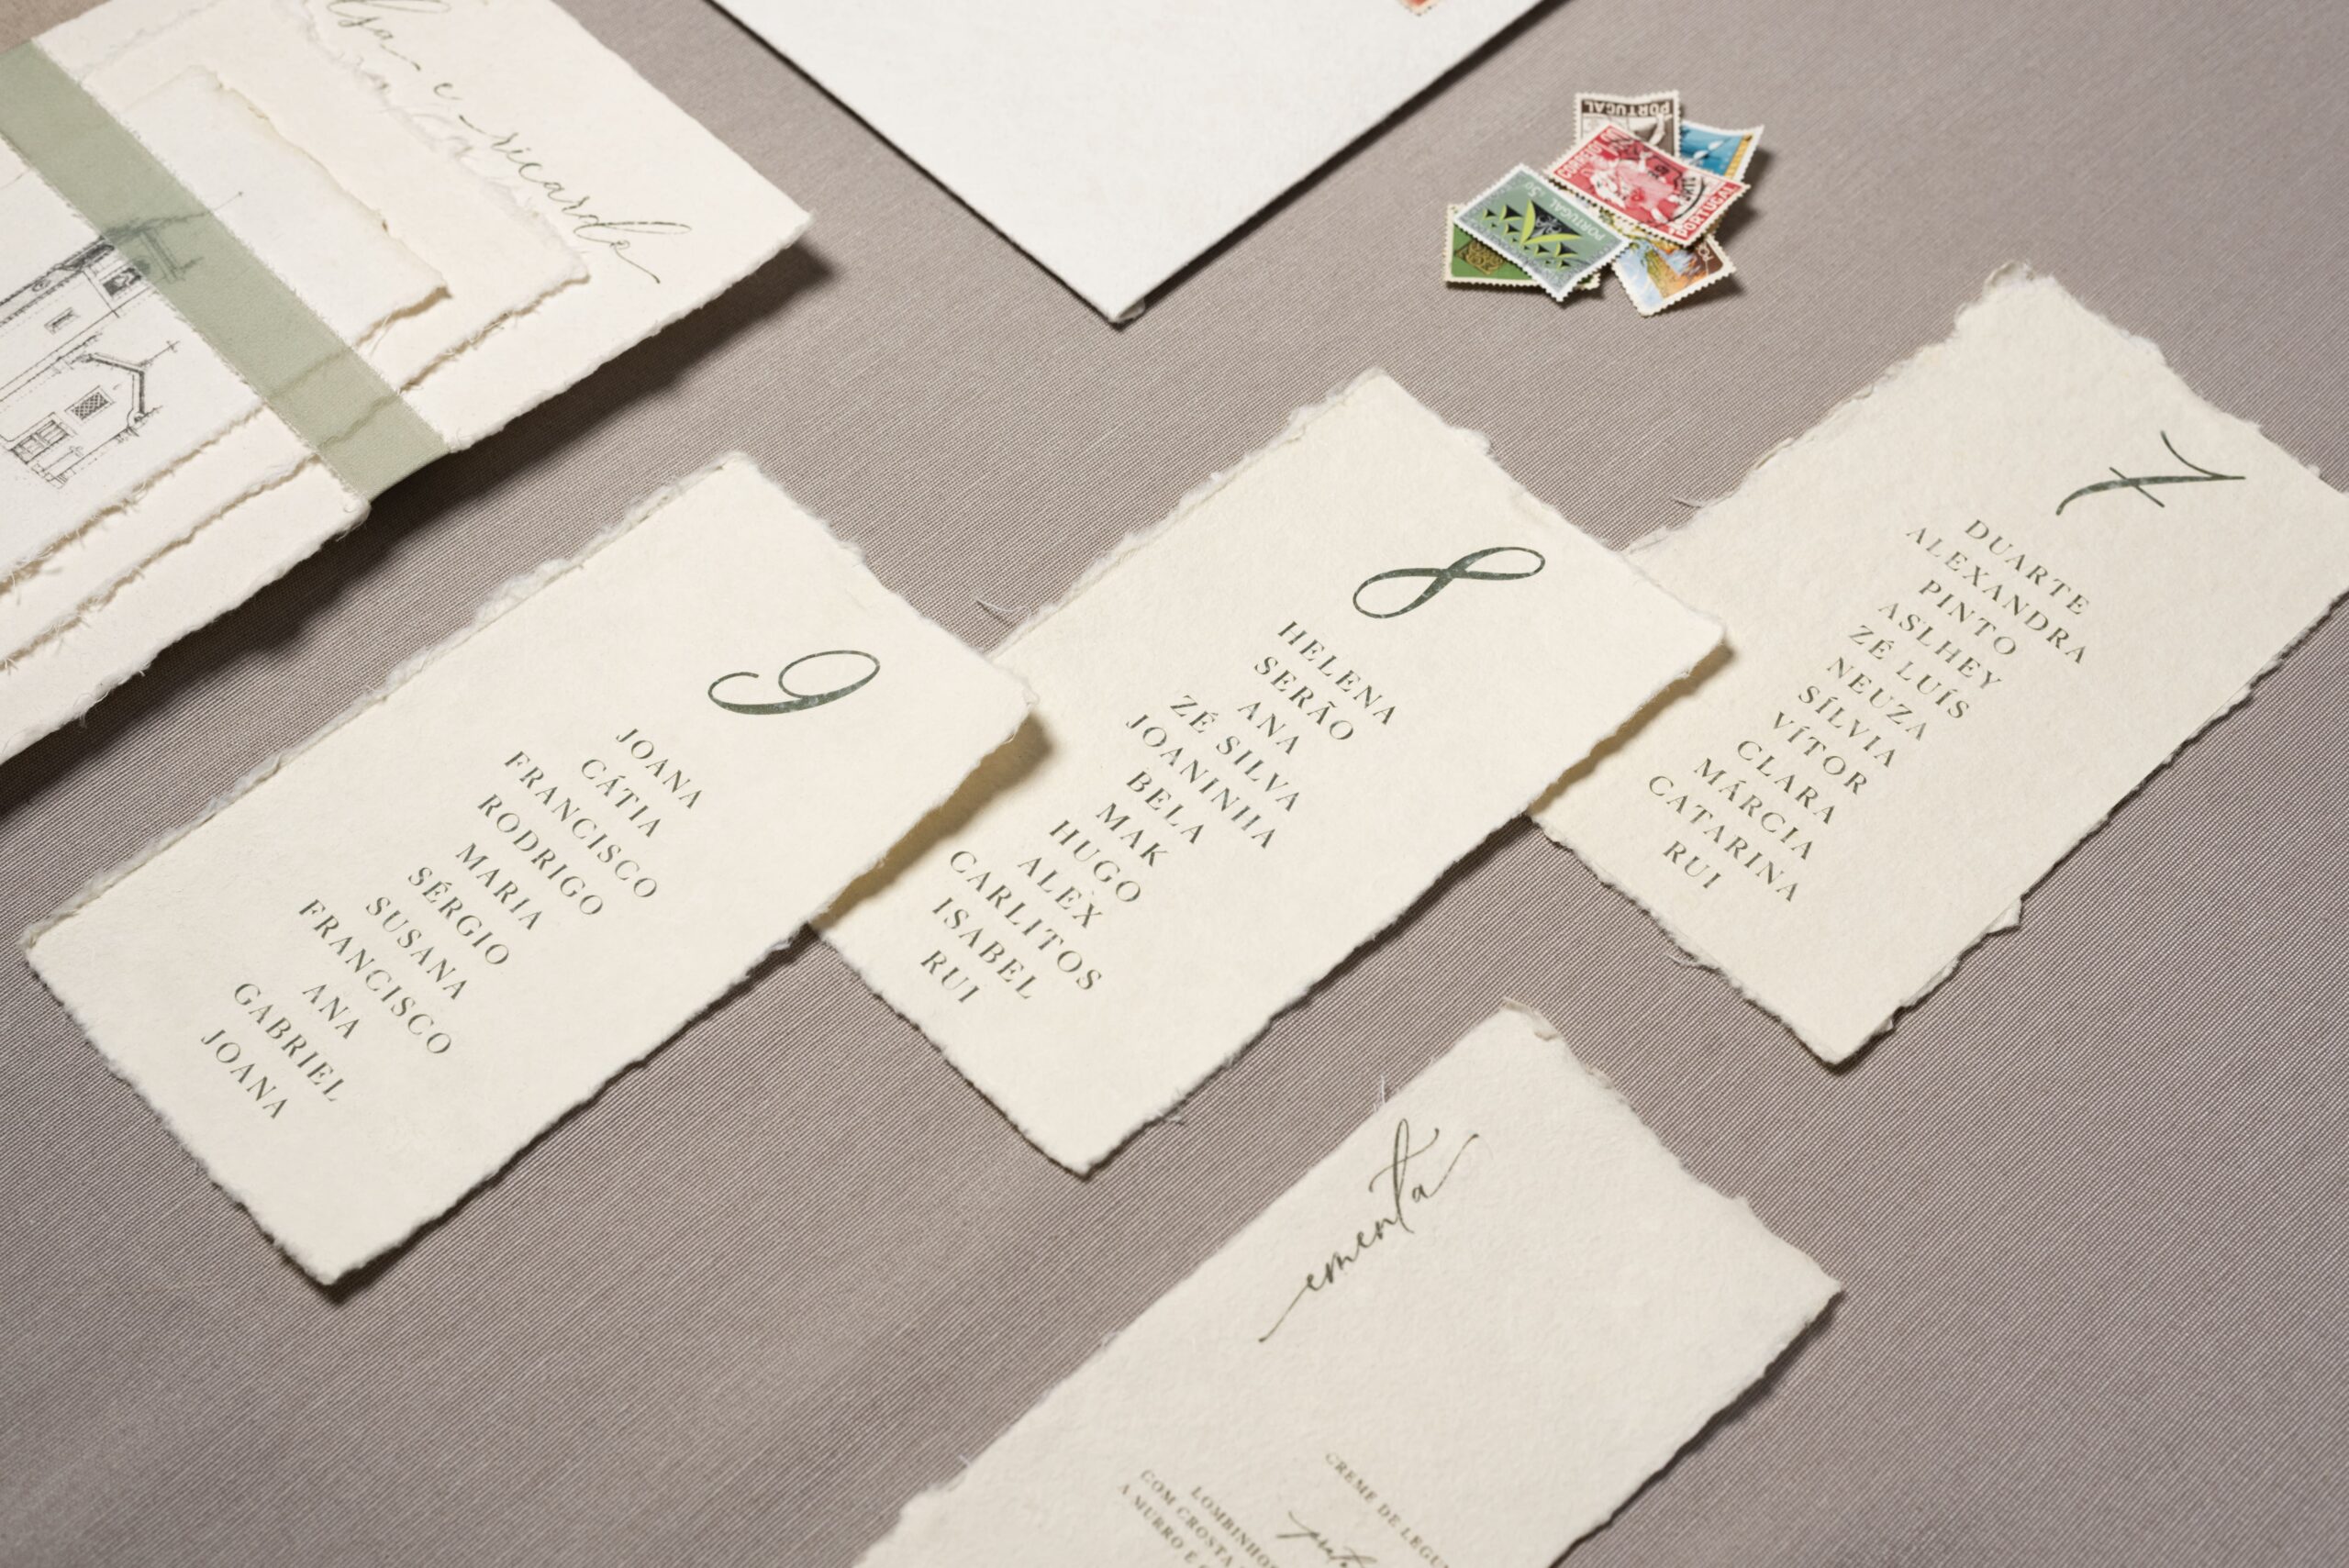 Seating plan, ementa e convite em papel artesanal com detalhes em verde